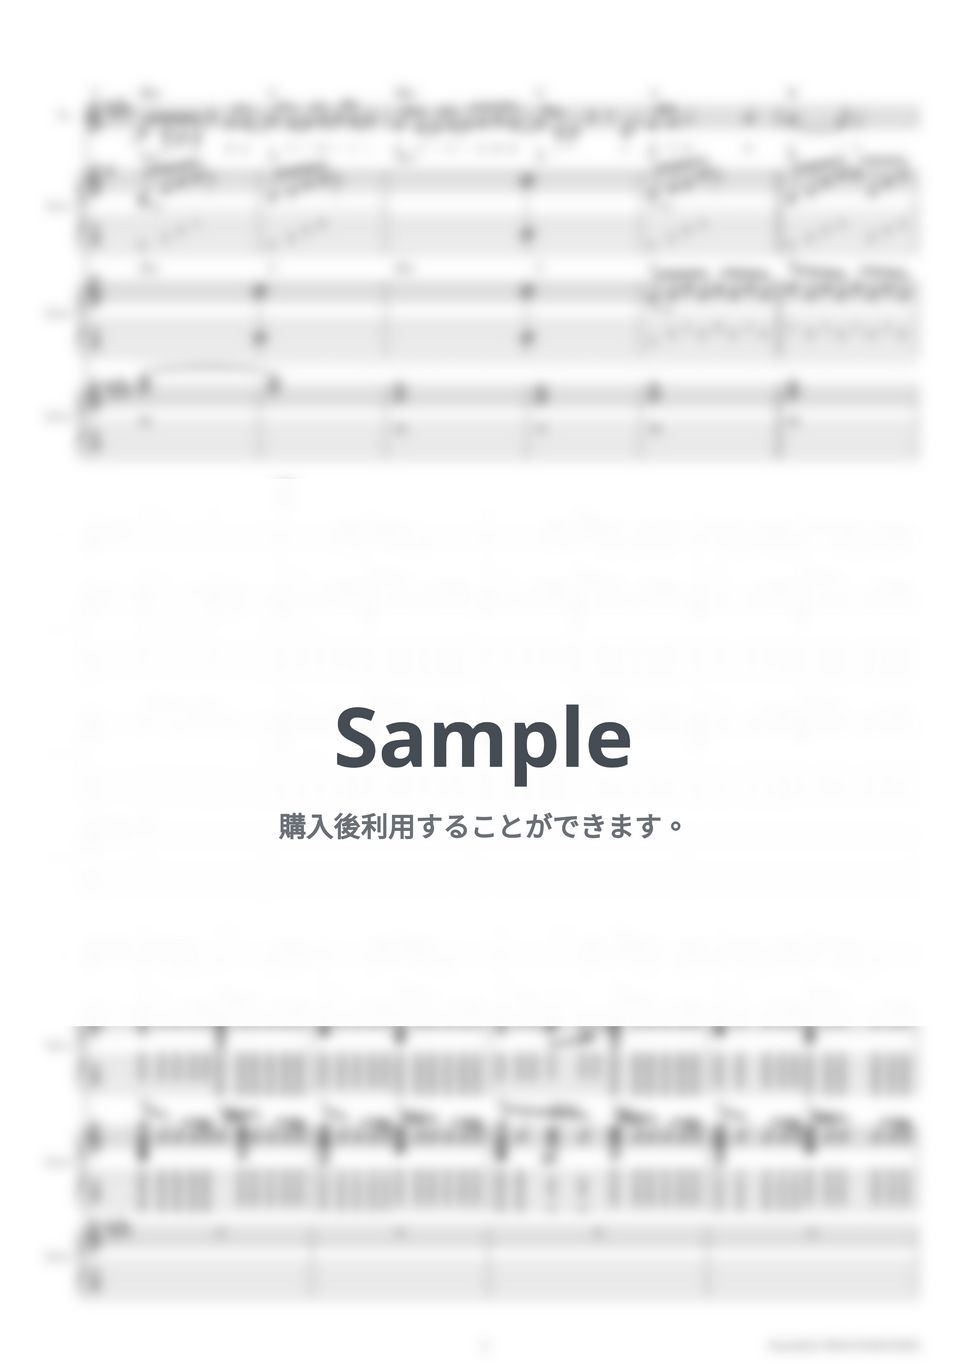 きのこ帝国 - ラプス (ギタースコア・歌詞・コード付き) by TRIAD GUITAR SCHOOL